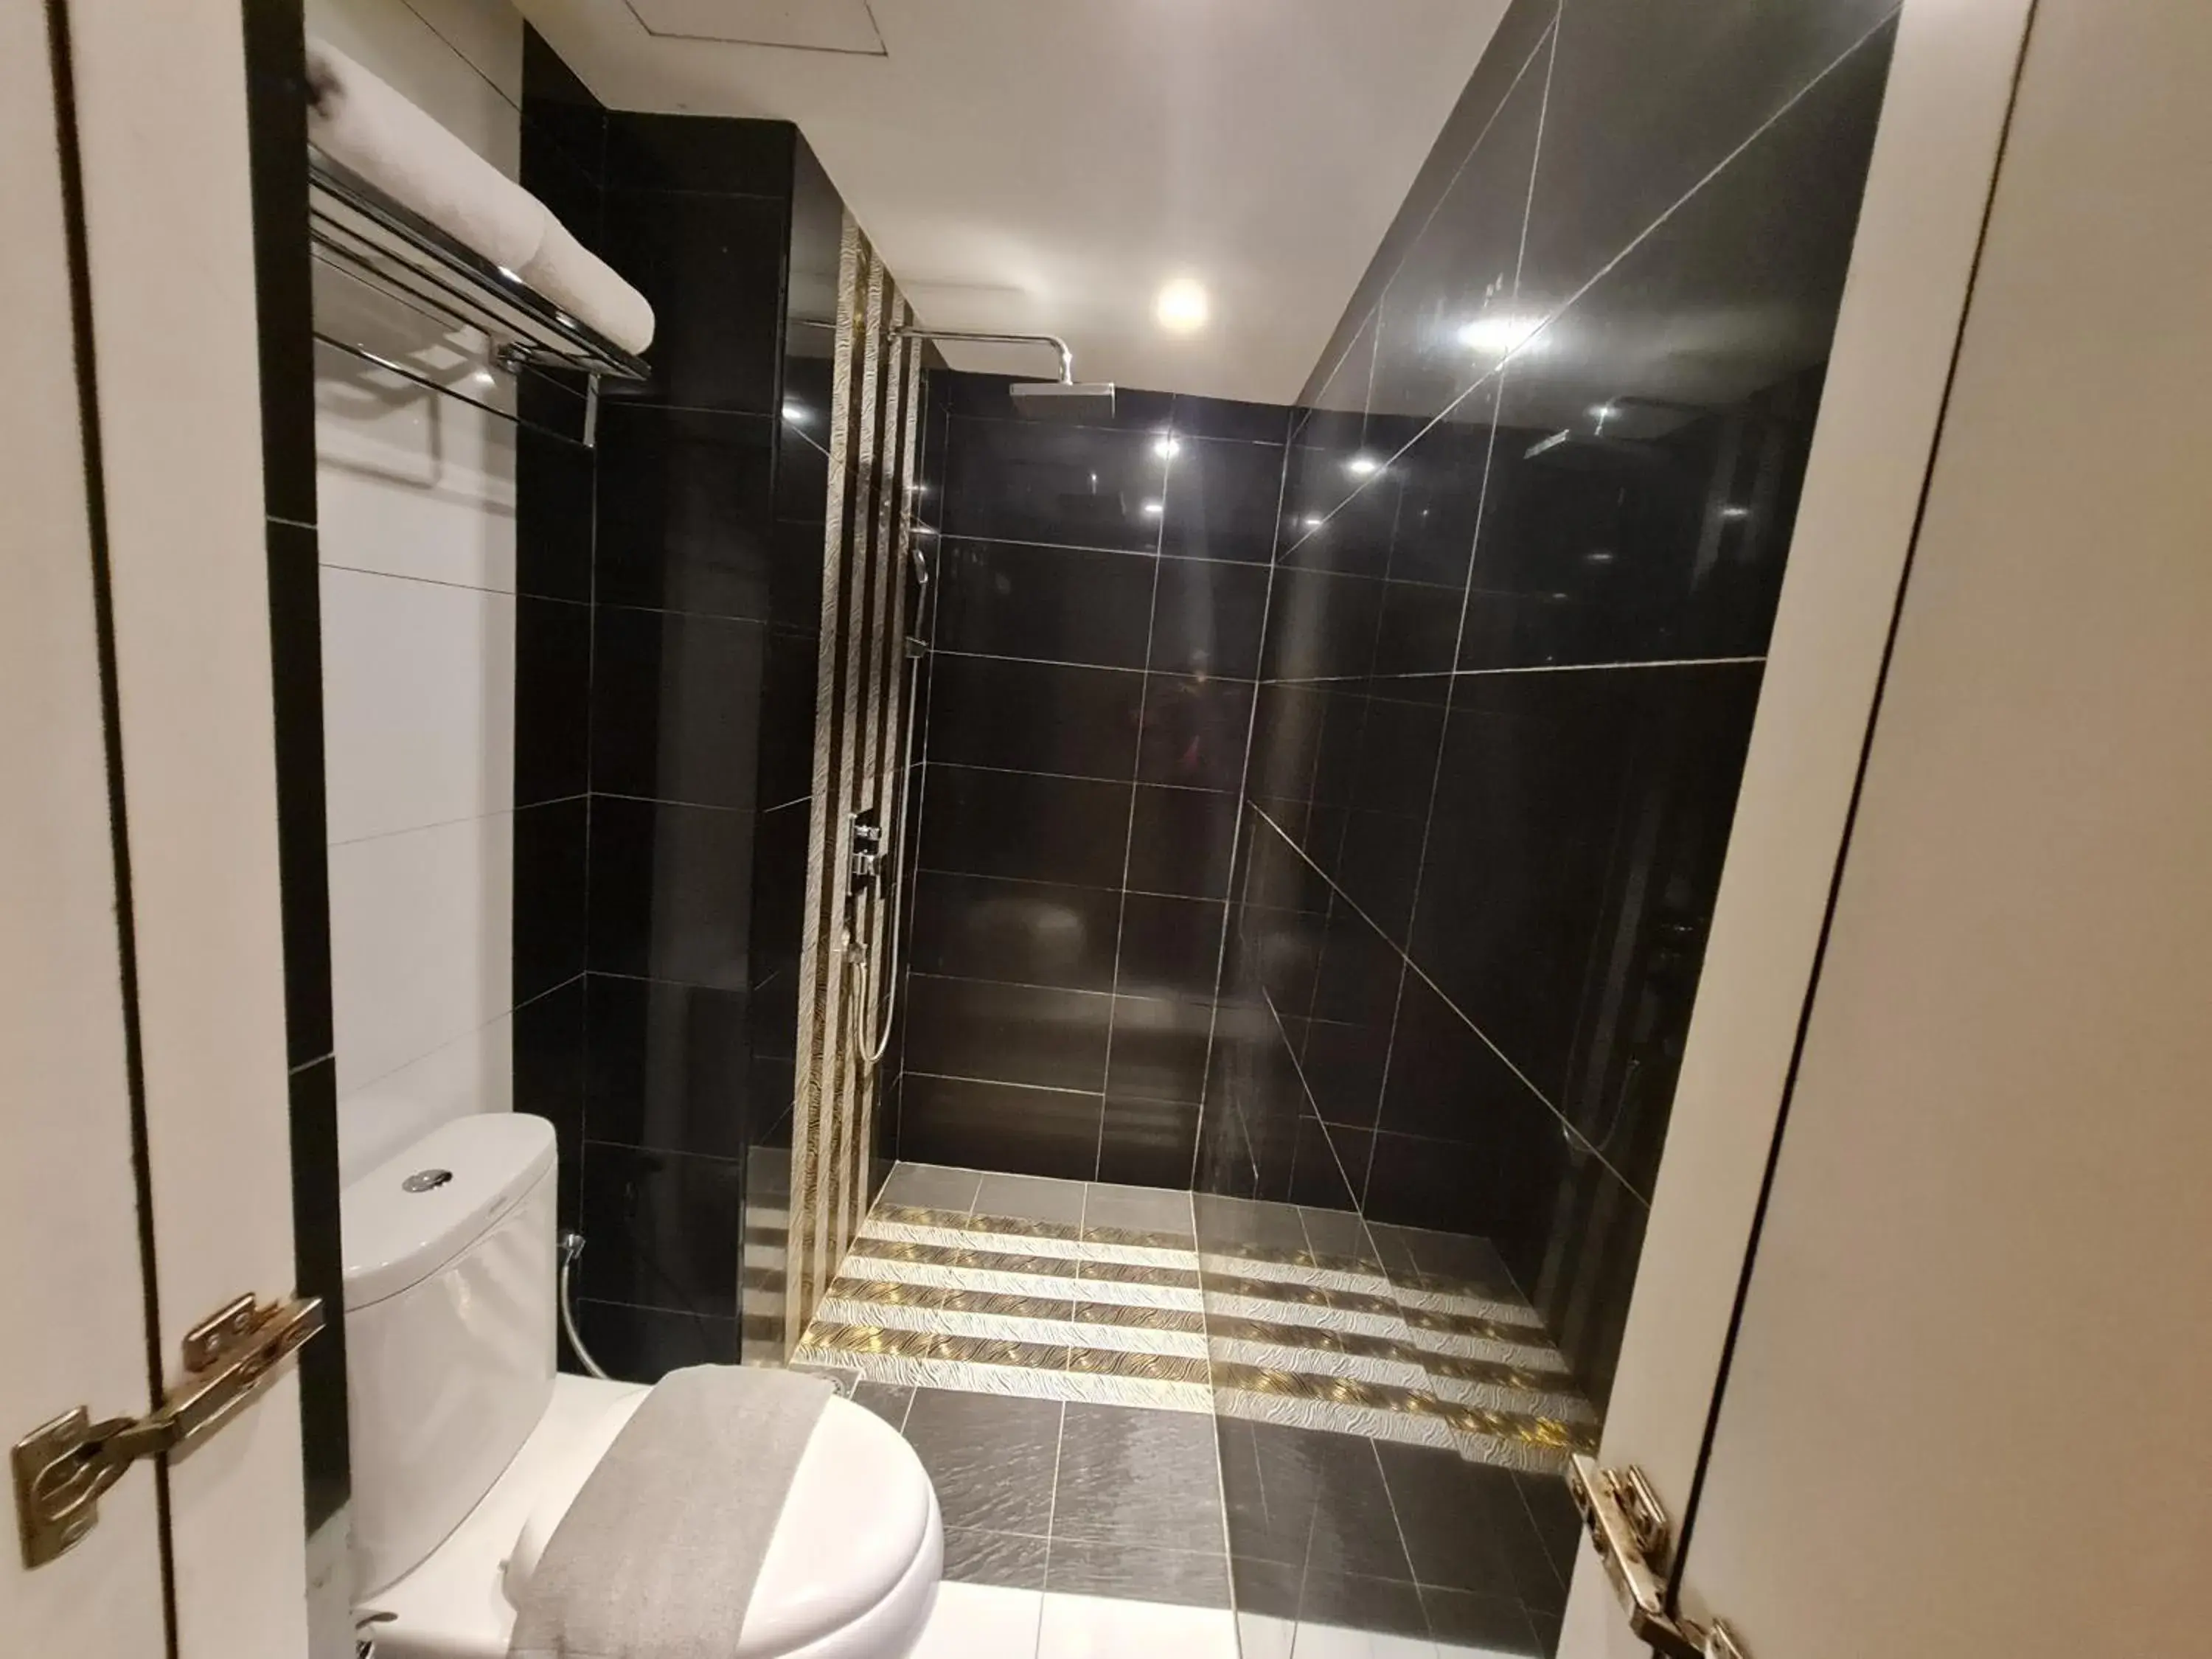 Bathroom in Arenaa Star Hotel